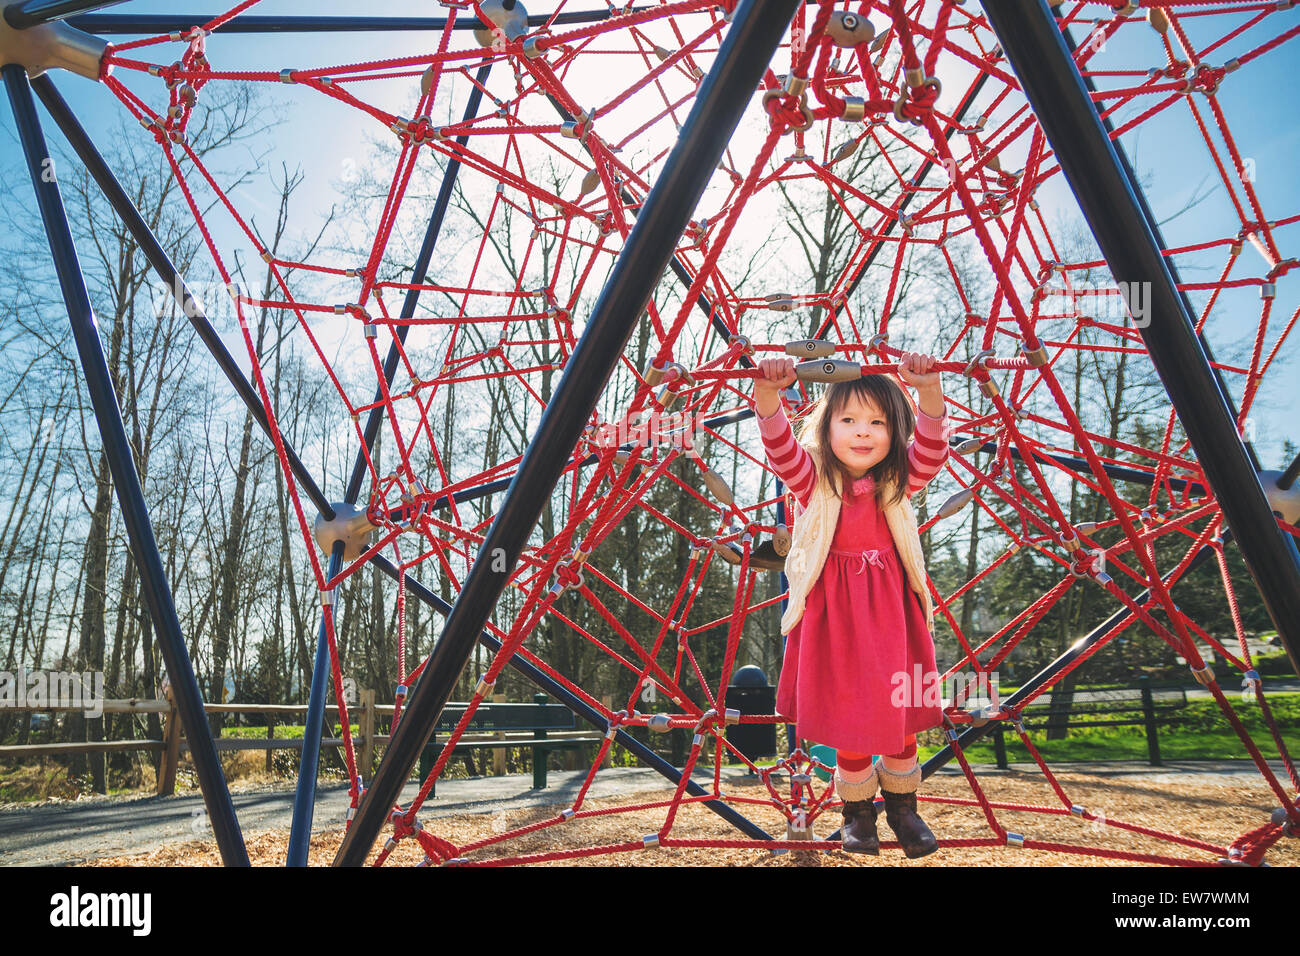 Fille jouant sur un cadre d'escalade rouge dans un parc, USA Banque D'Images